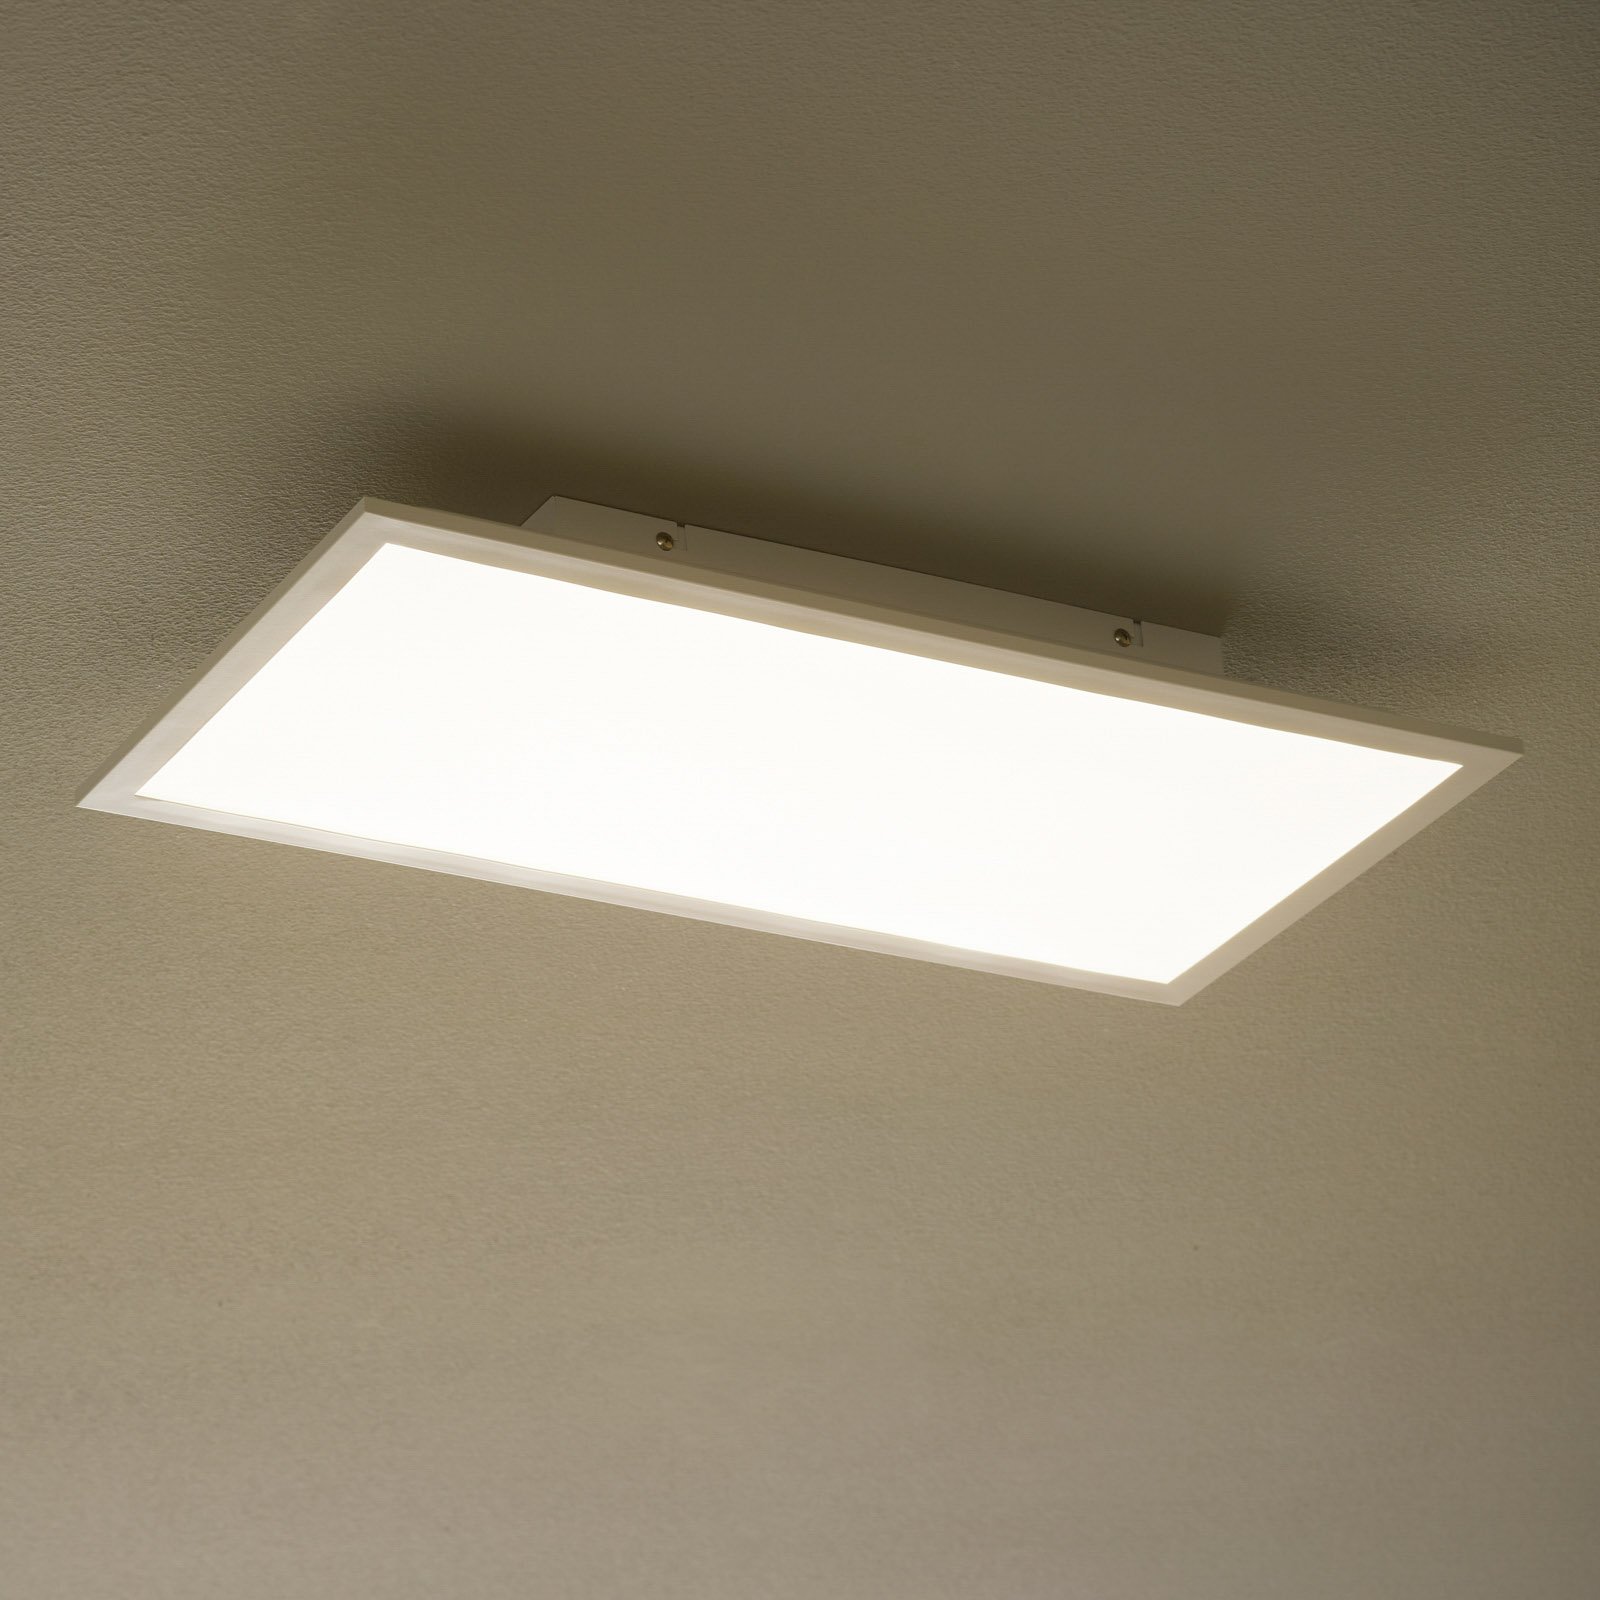 Fleet LED-taklampe med bevegelsessensor 60x30 cm